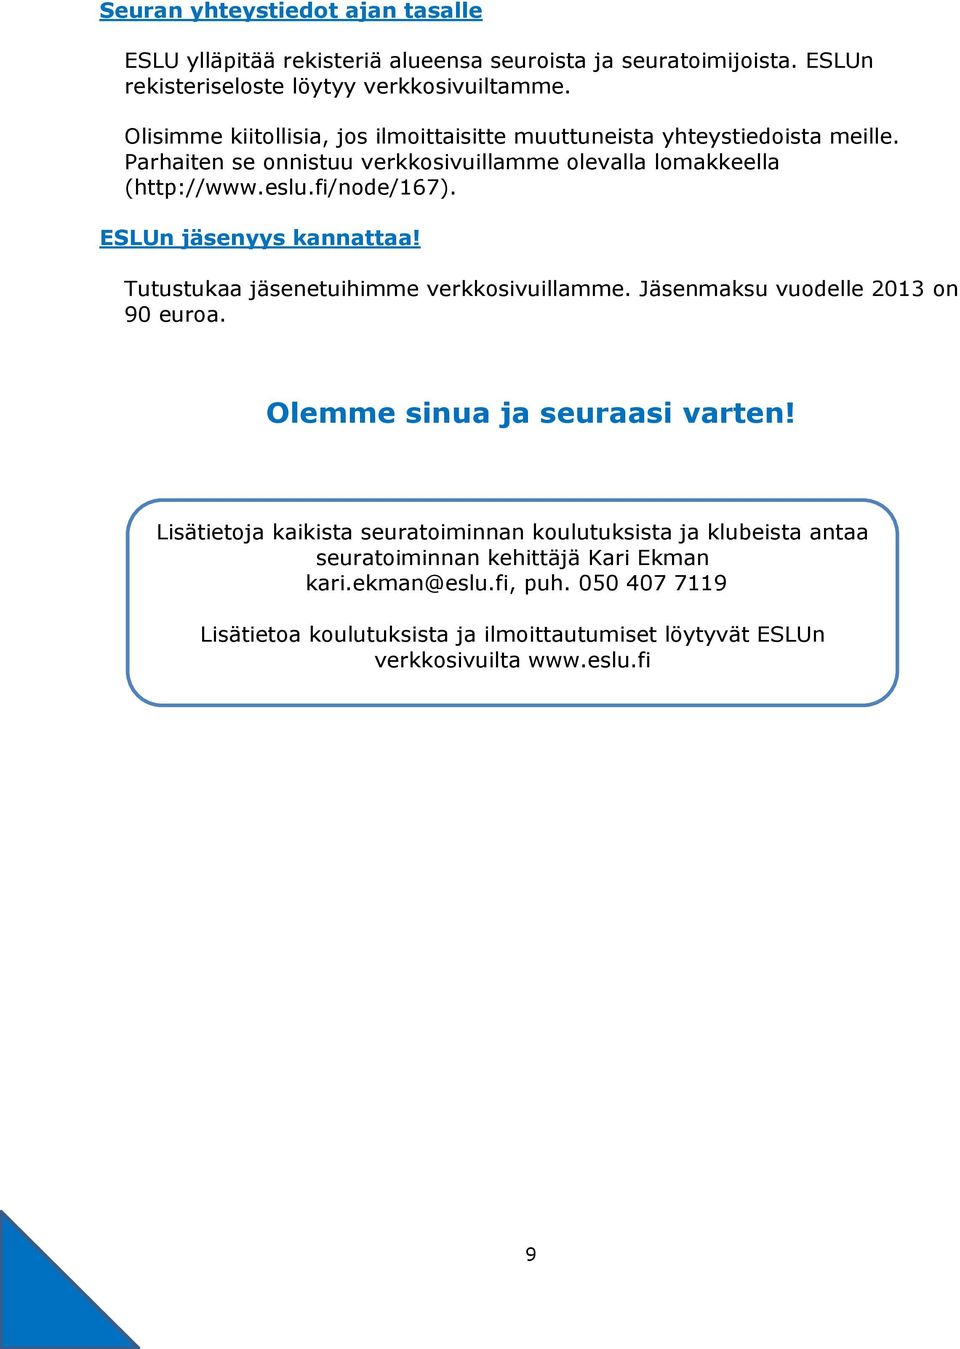 ESLUn jäsenyys kannattaa! Tutustukaa jäsenetuihimme verkkosivuillamme. Jäsenmaksu vuodelle 2013 on 90 euroa. Olemme sinua ja seuraasi varten!